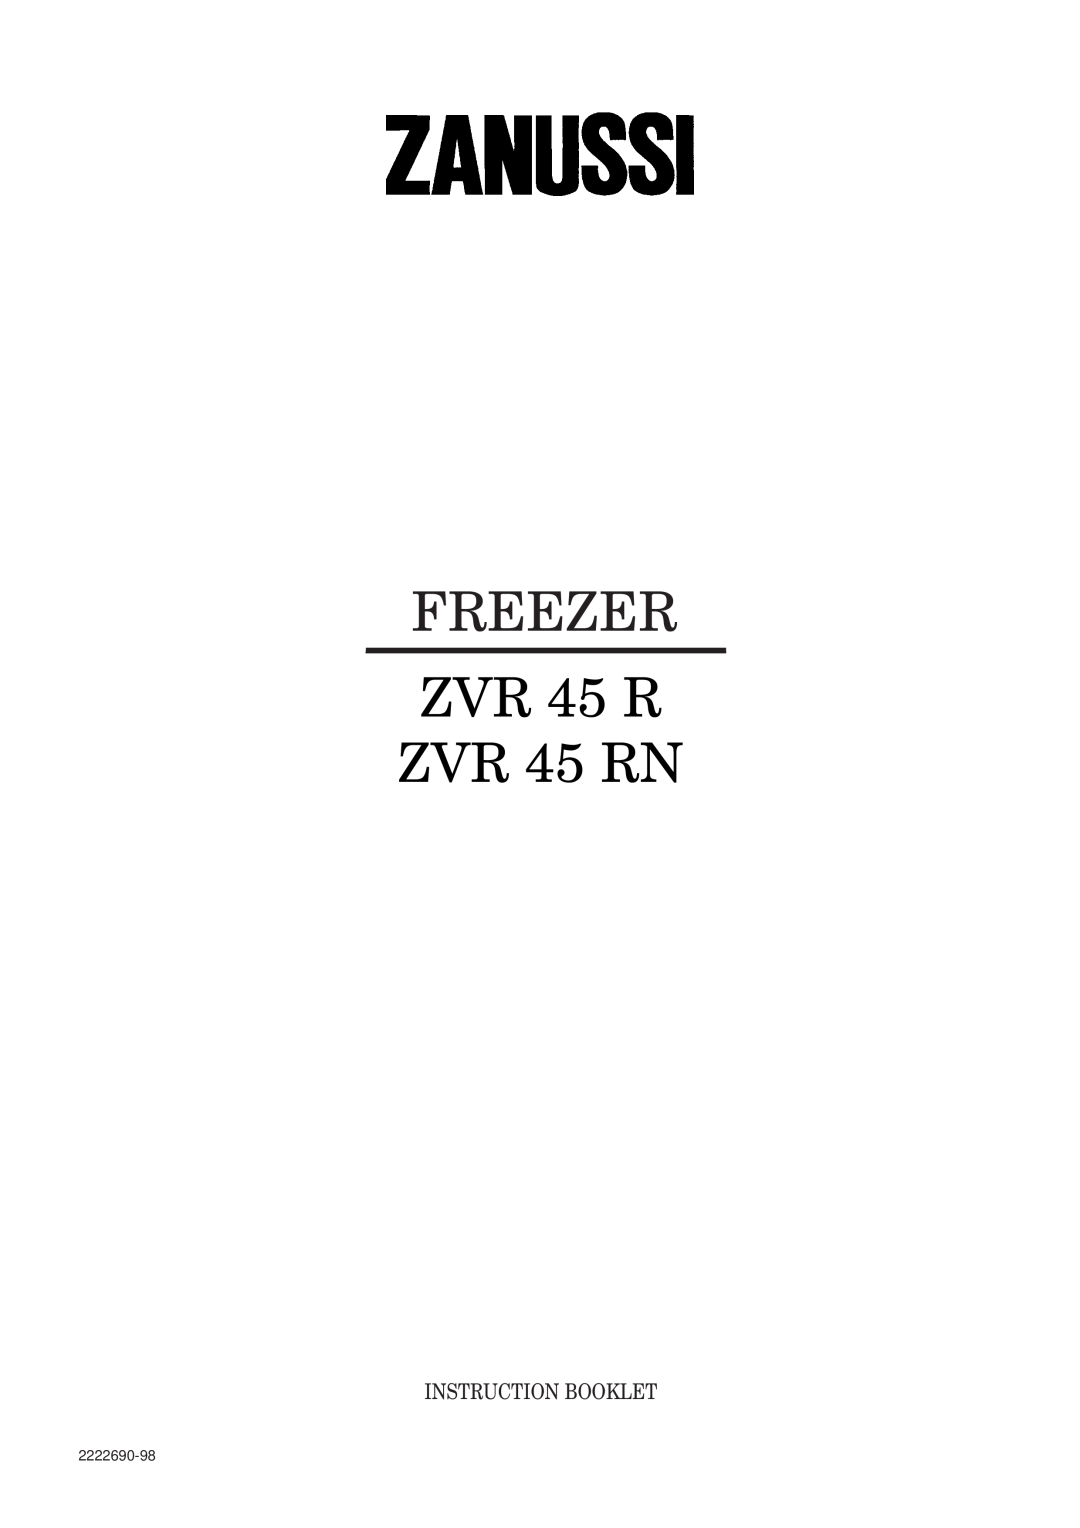 Zanussi manual FREEZER ZVR 45 R ZVR 45 RN, Instruction Booklet, 2222690-98 